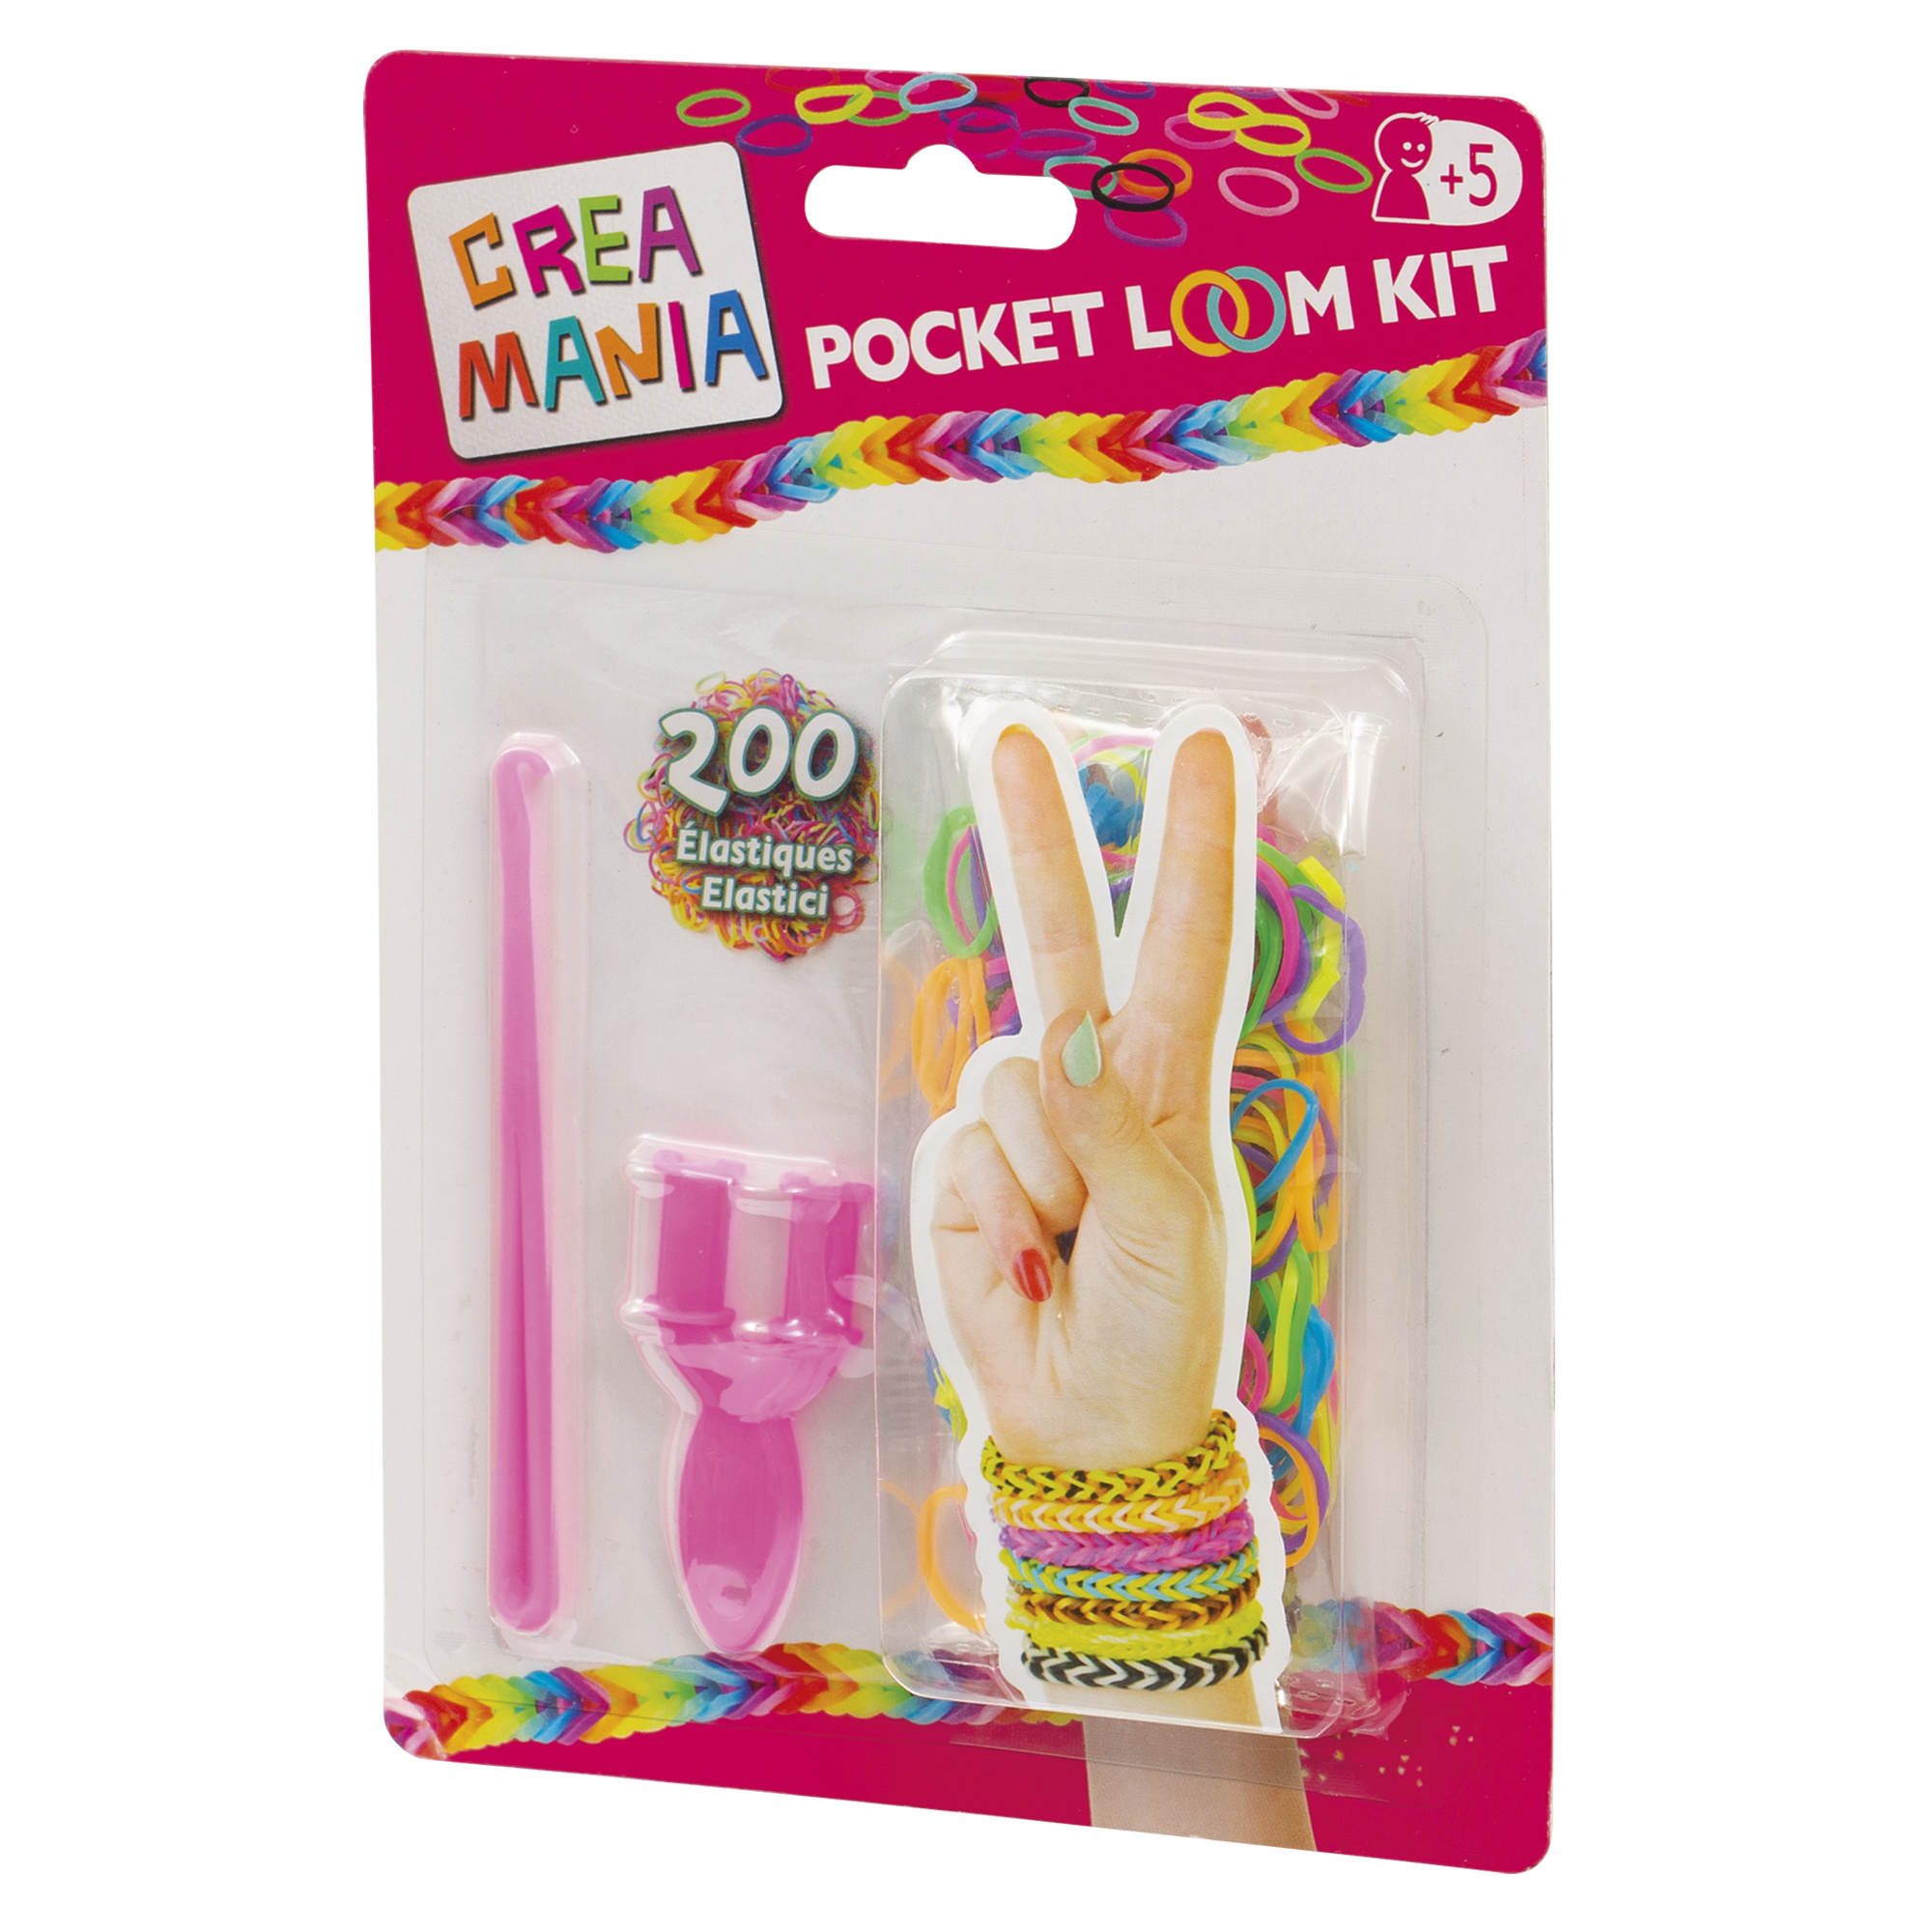 Pocket loom kit - CREA MANIA